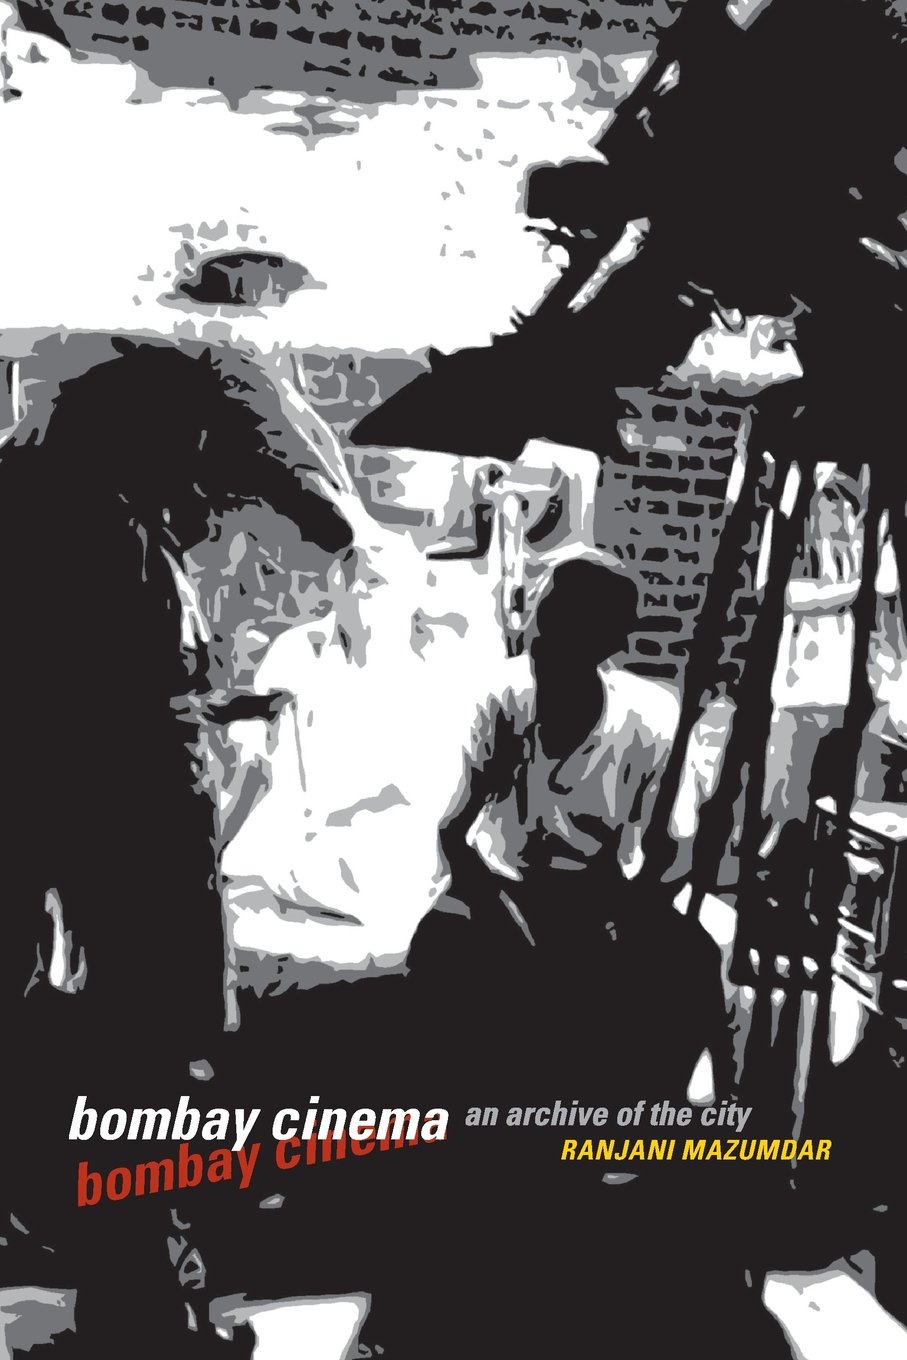 Bombay Cinema: An Archive of the City by Ranjani Mazumdar (University of Minnesota Press, 2007).